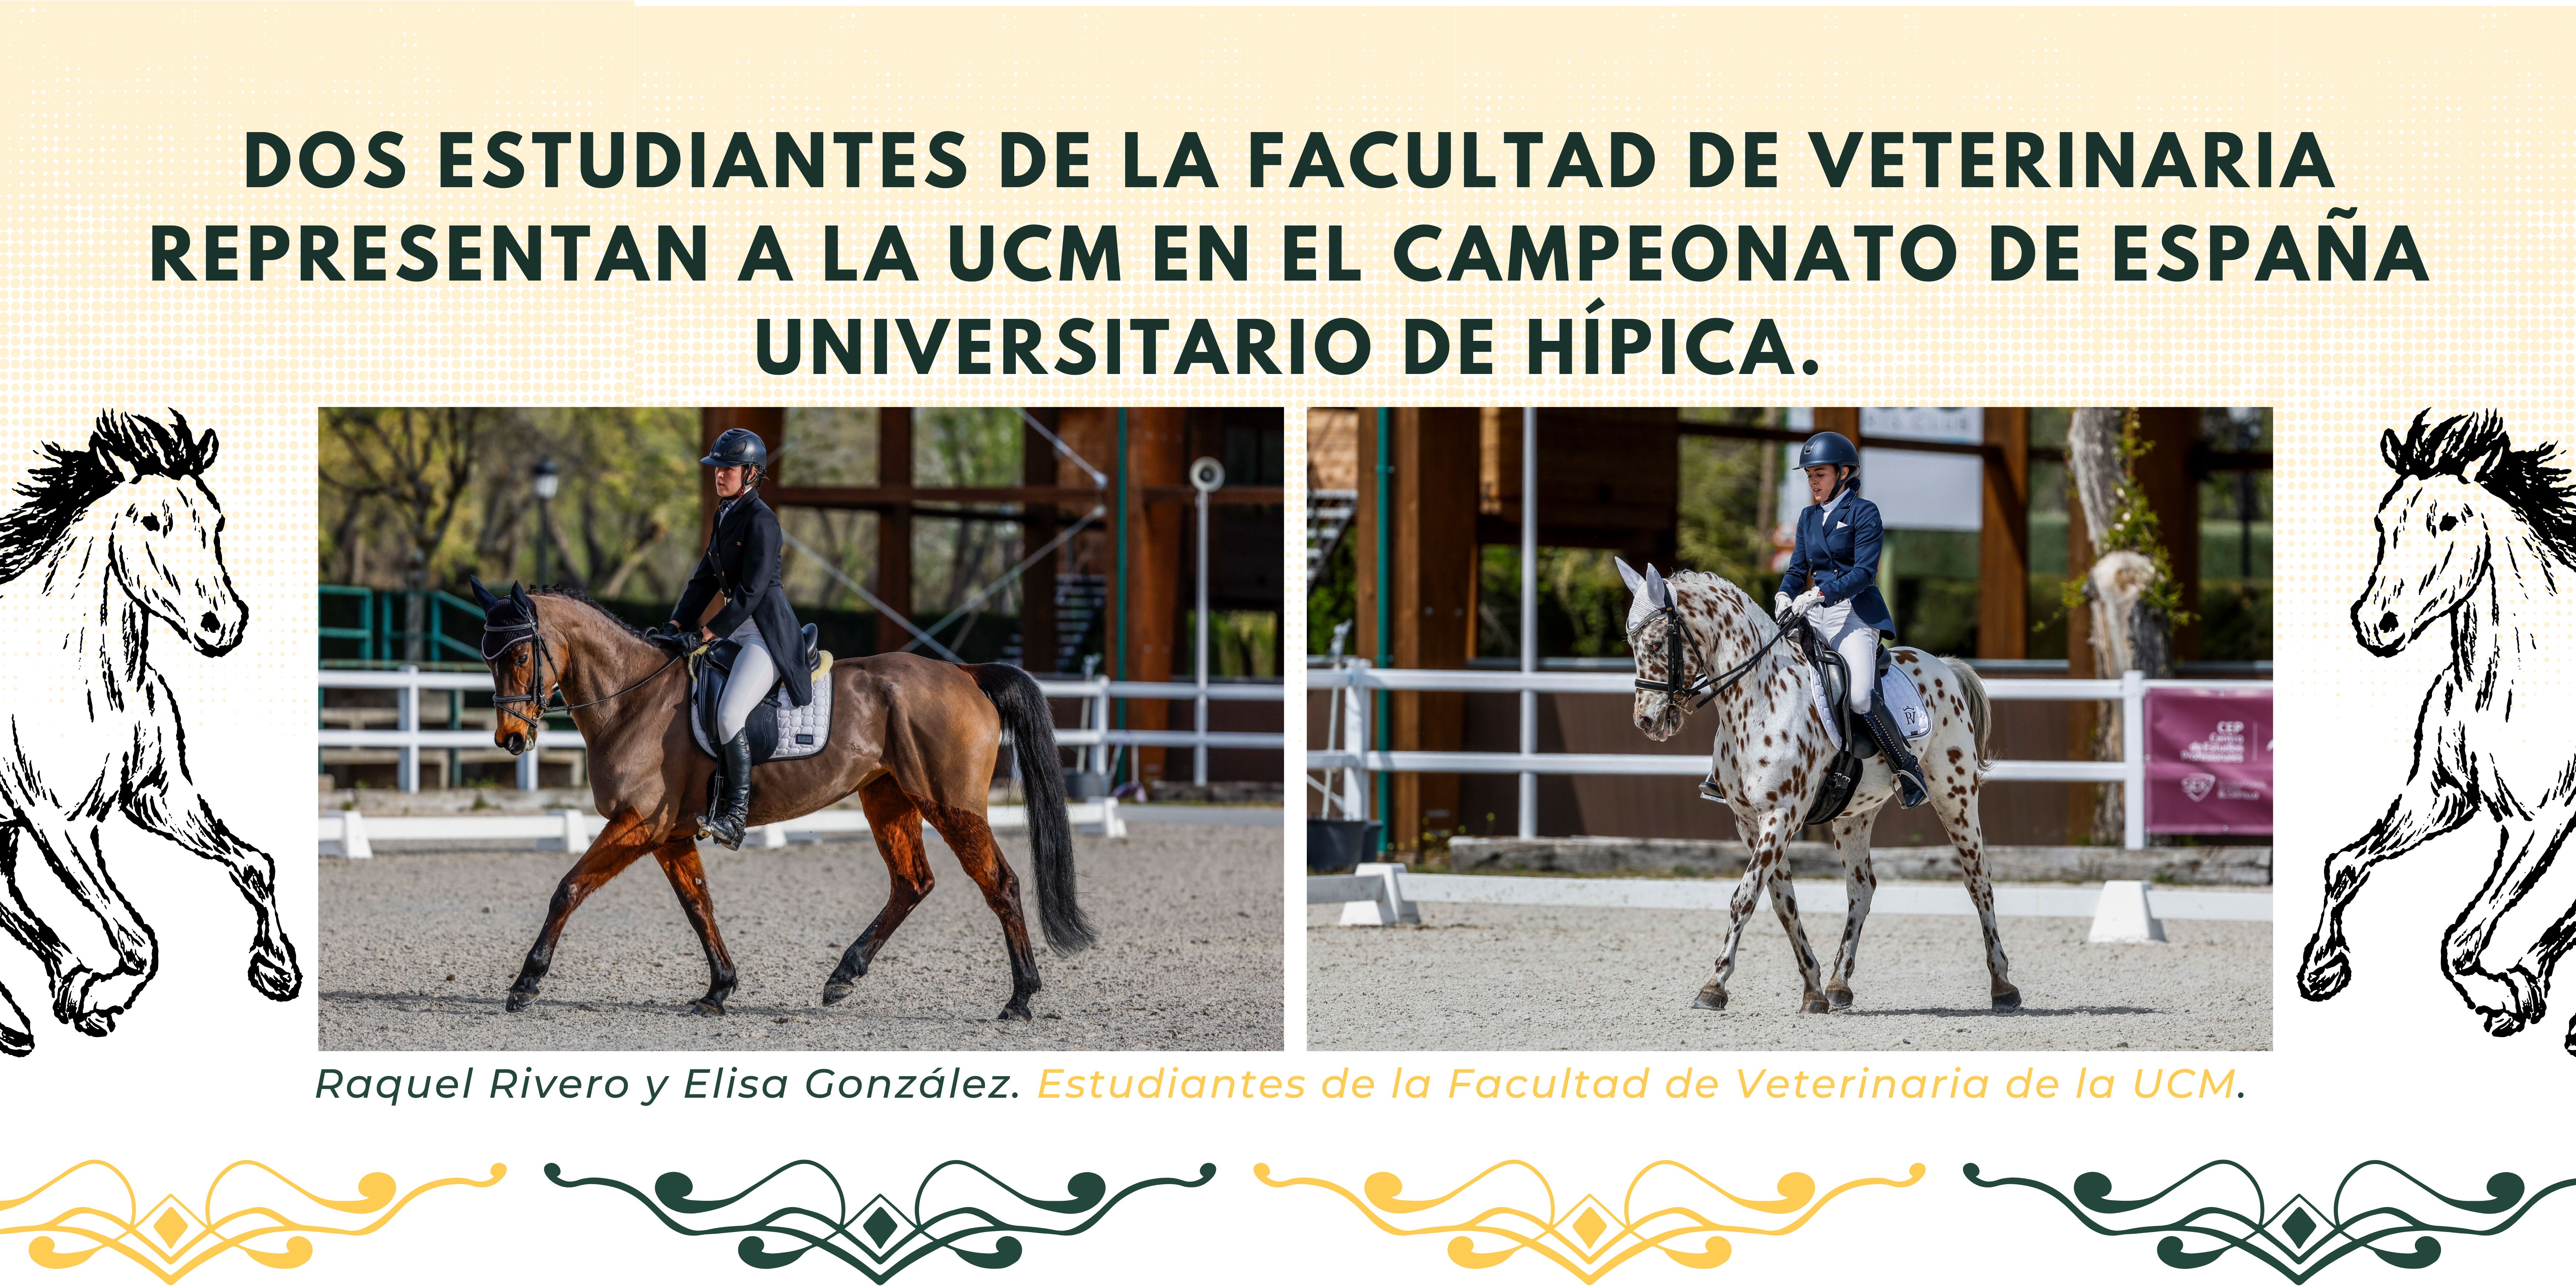 Dos estudiantes de la Facultad de Veterinaria representan a la UCM en el Campeonato de España Universitario de Hípica.